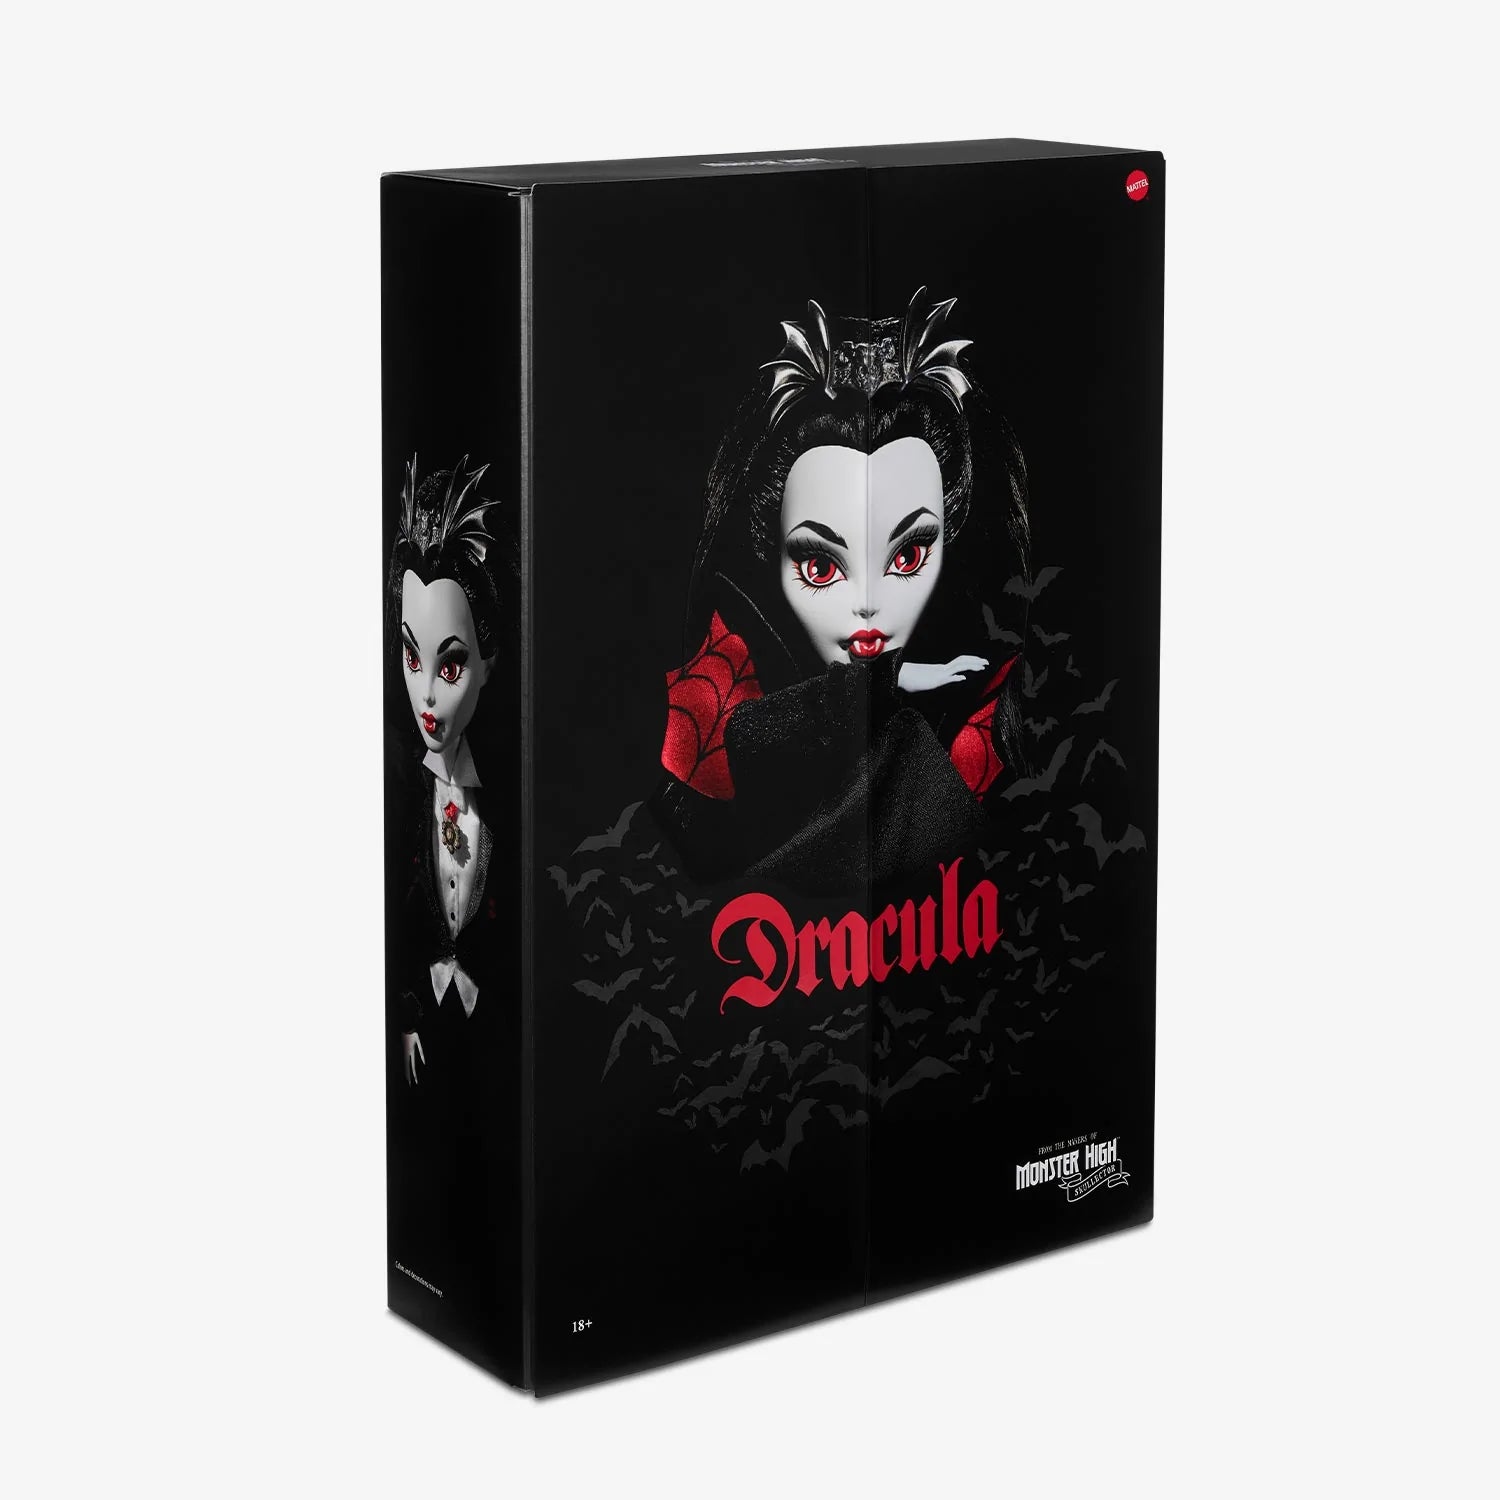 Monster High - Dracula Monster High Skullector Doll